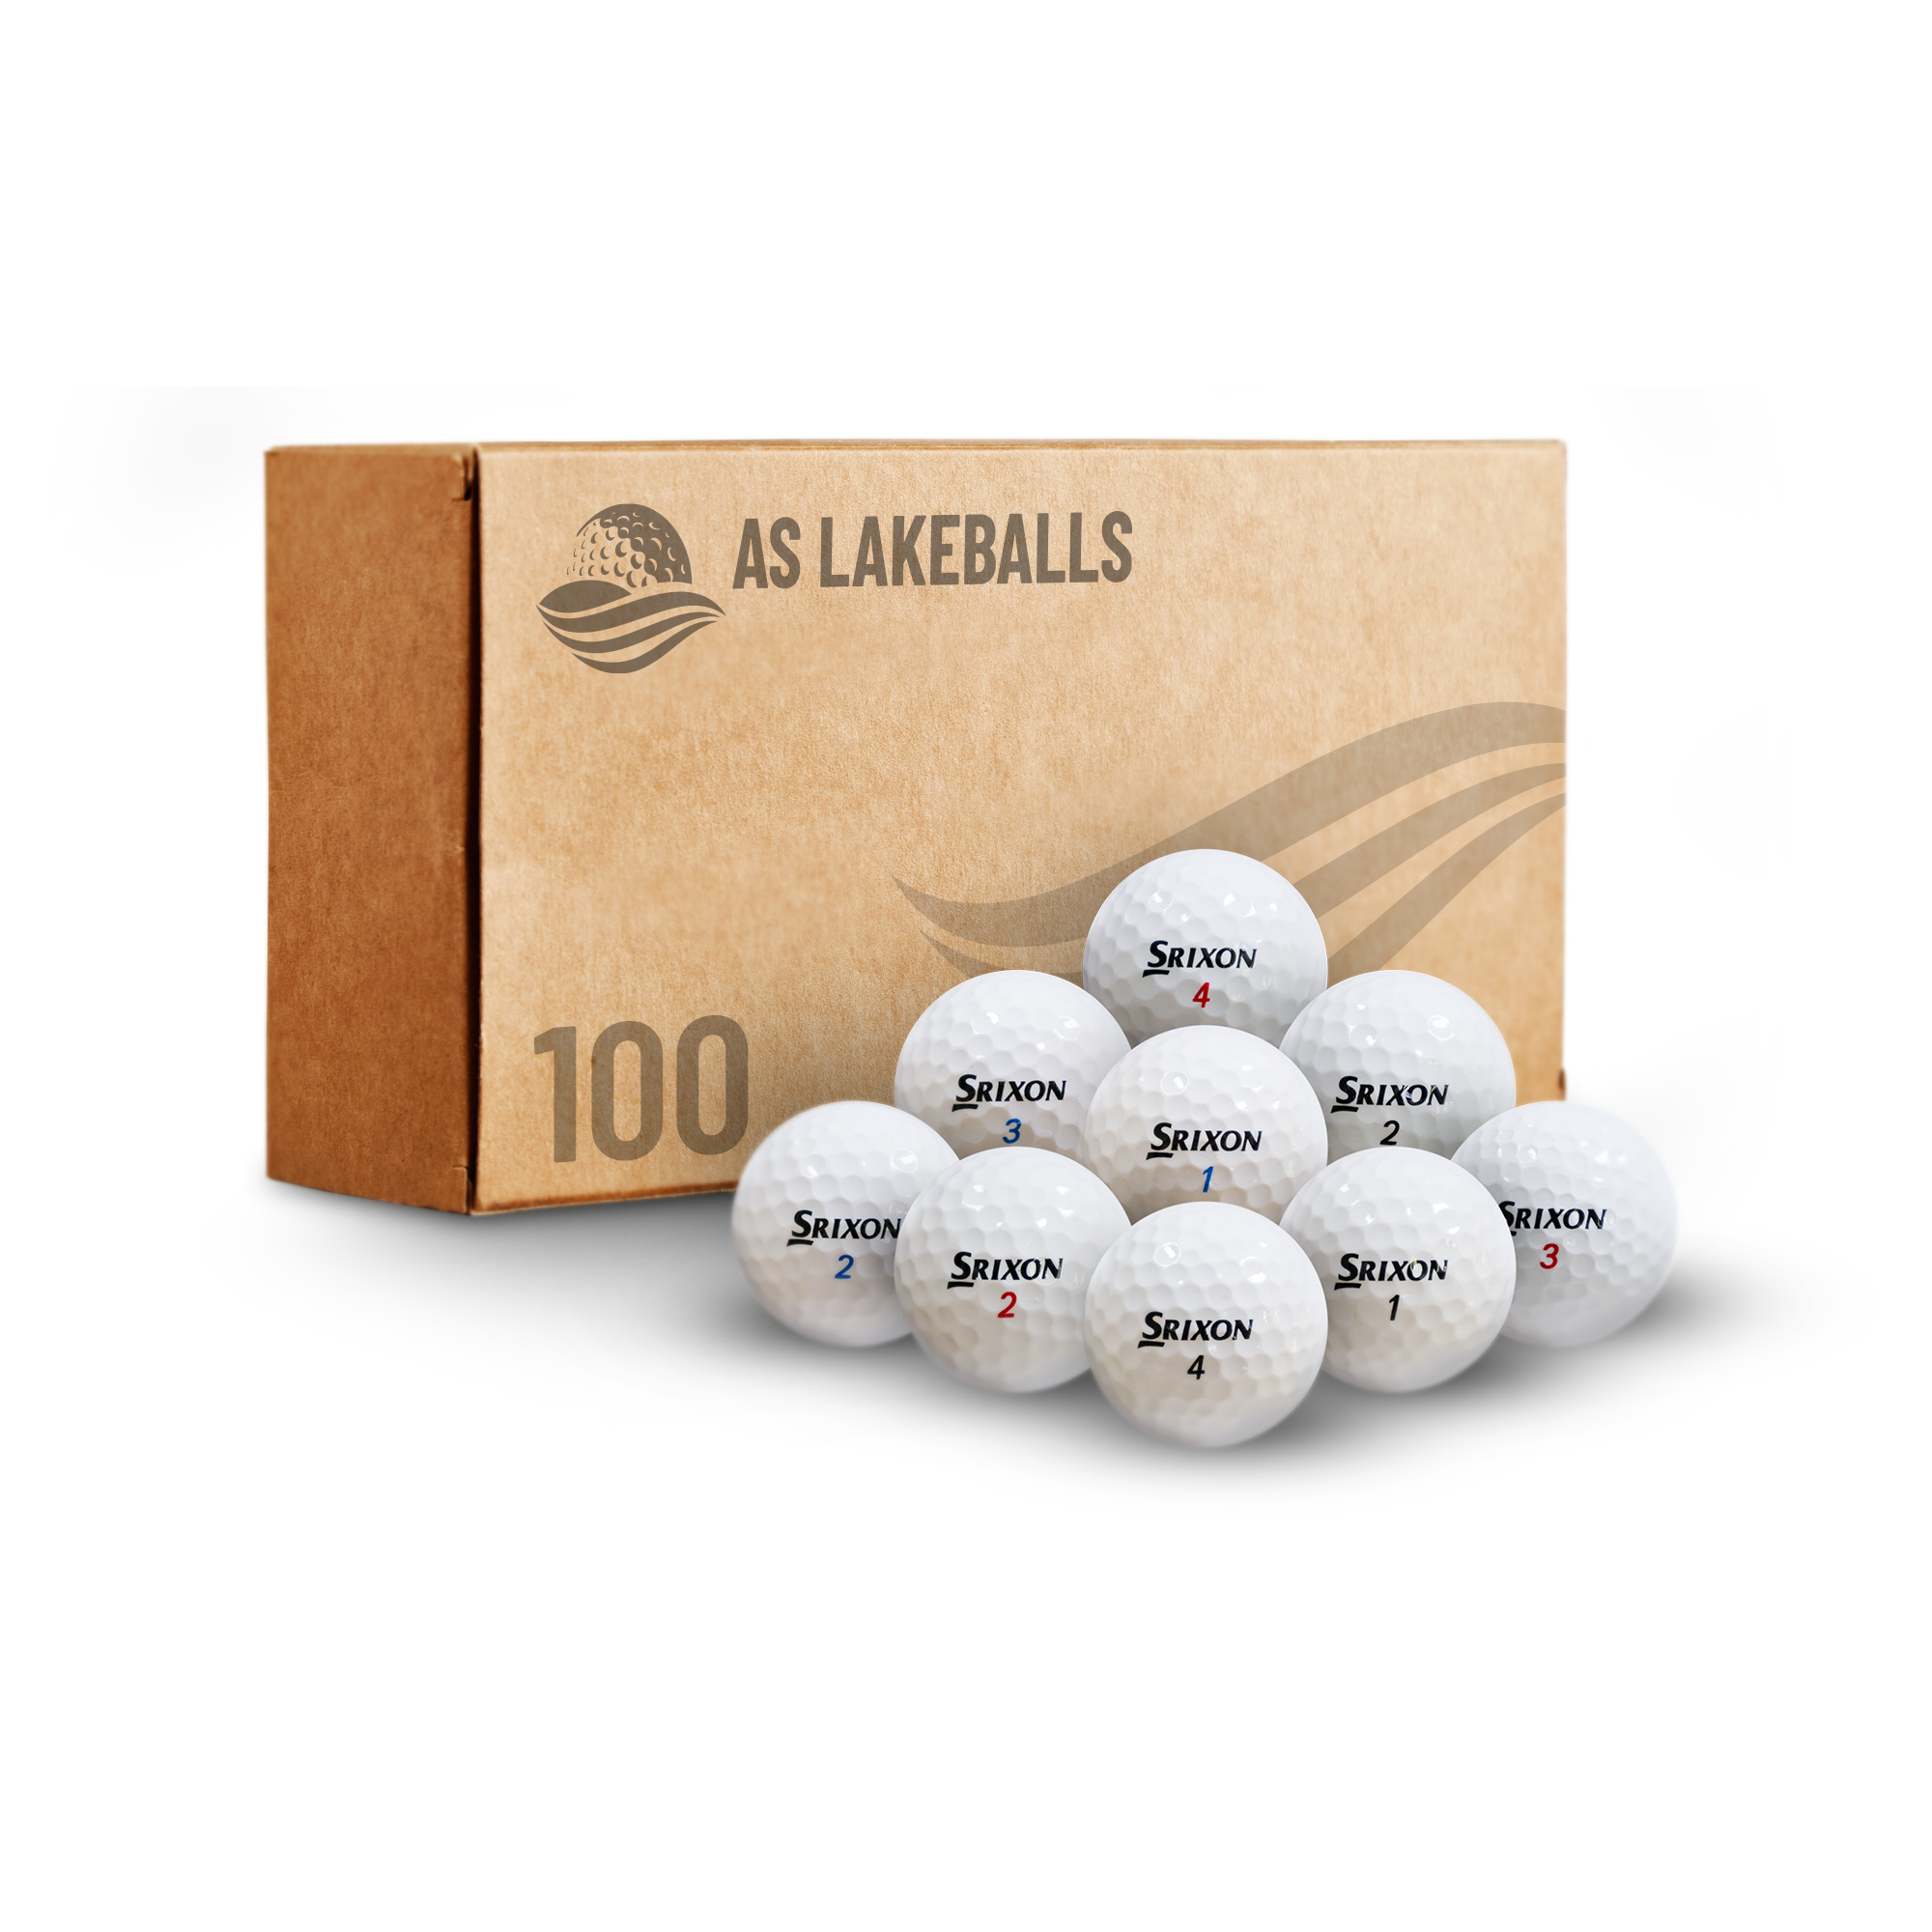 100 Srixon Mix AA-AAA Lakeballs bei AS Lakeballs günstig kaufen